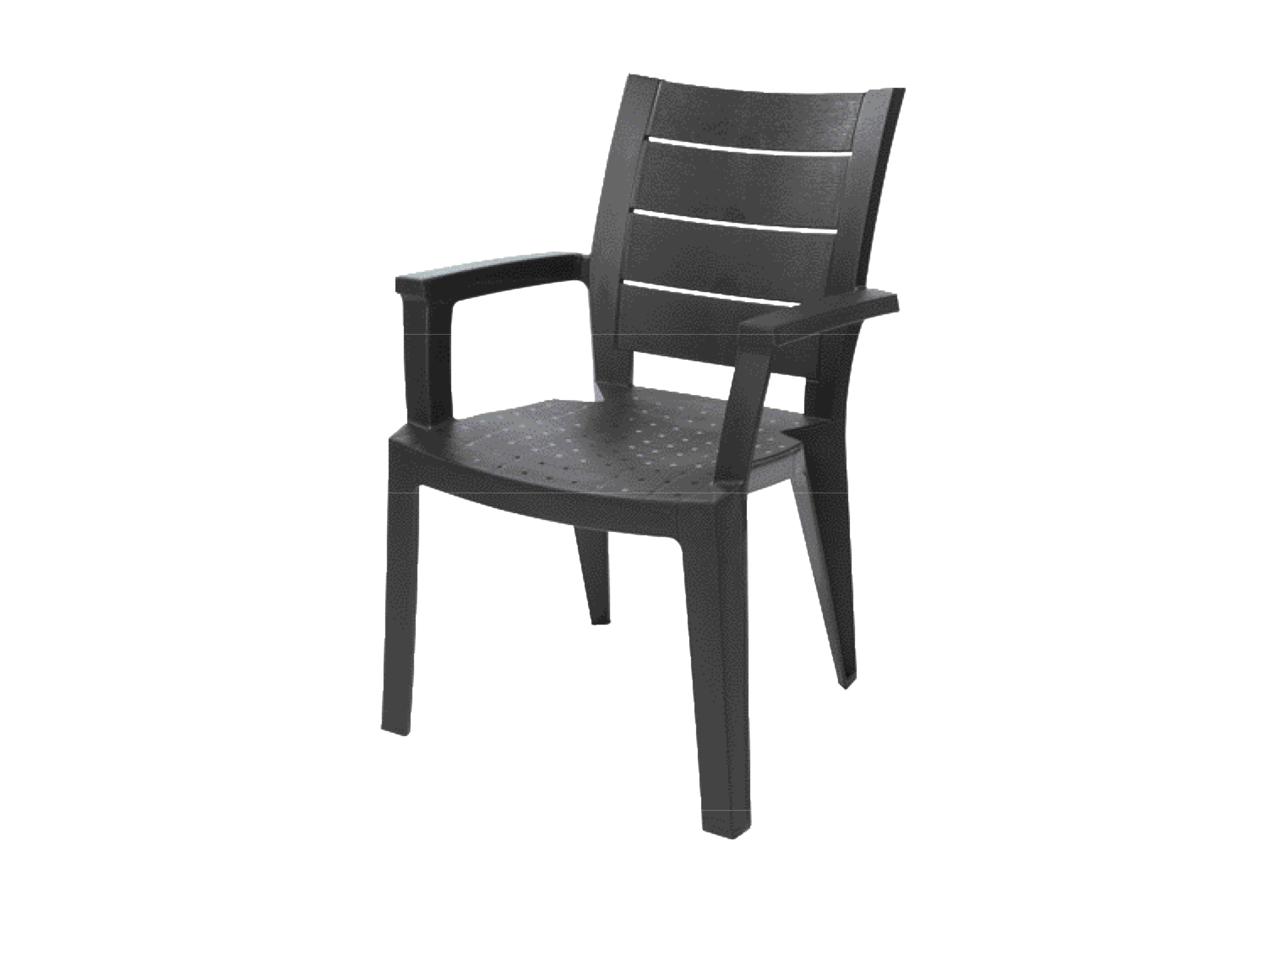 FLORABEST Stacking Garden Chair